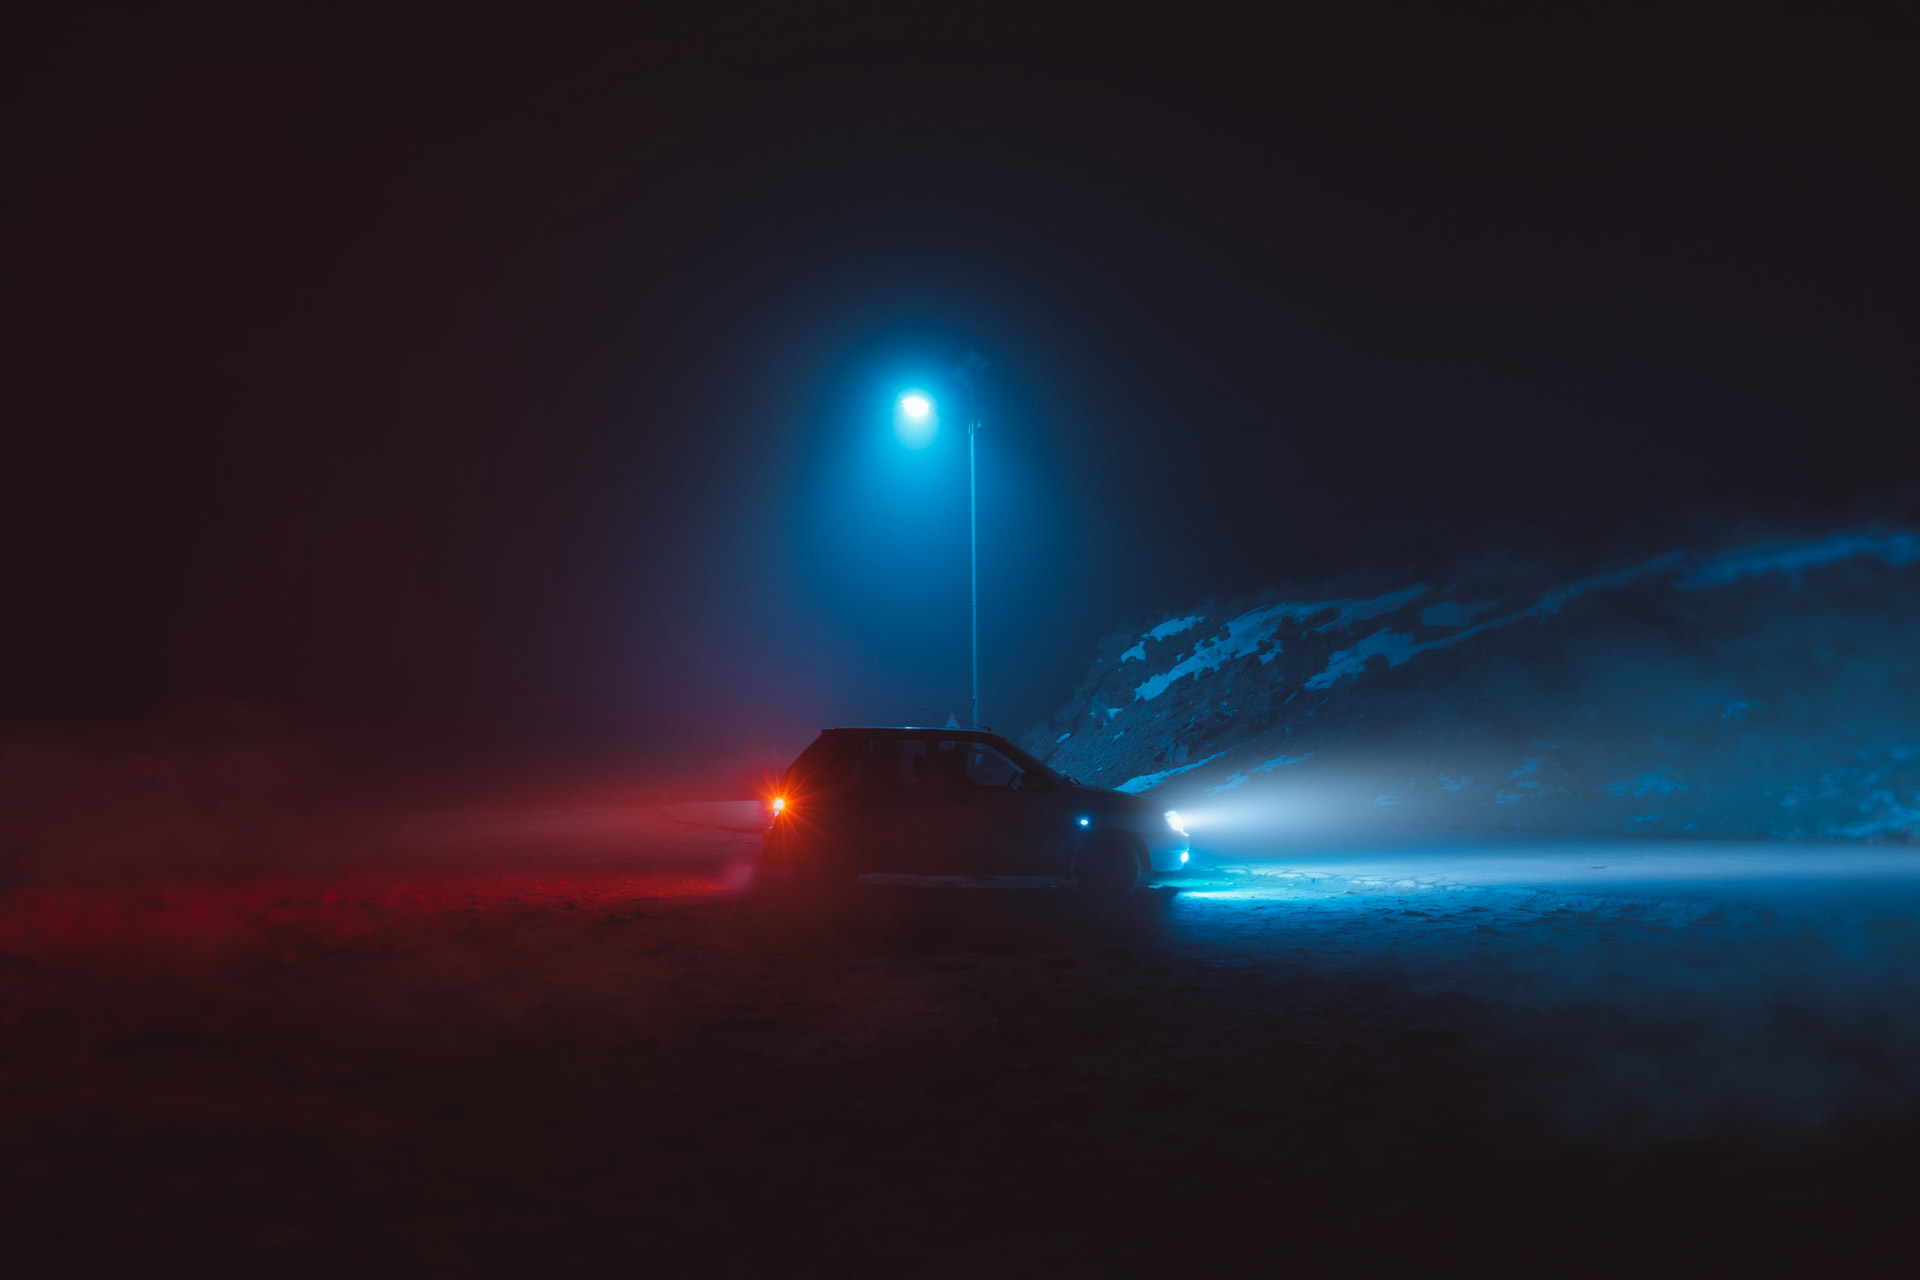 Beleuchtung am Auto ist oft eine Pflicht